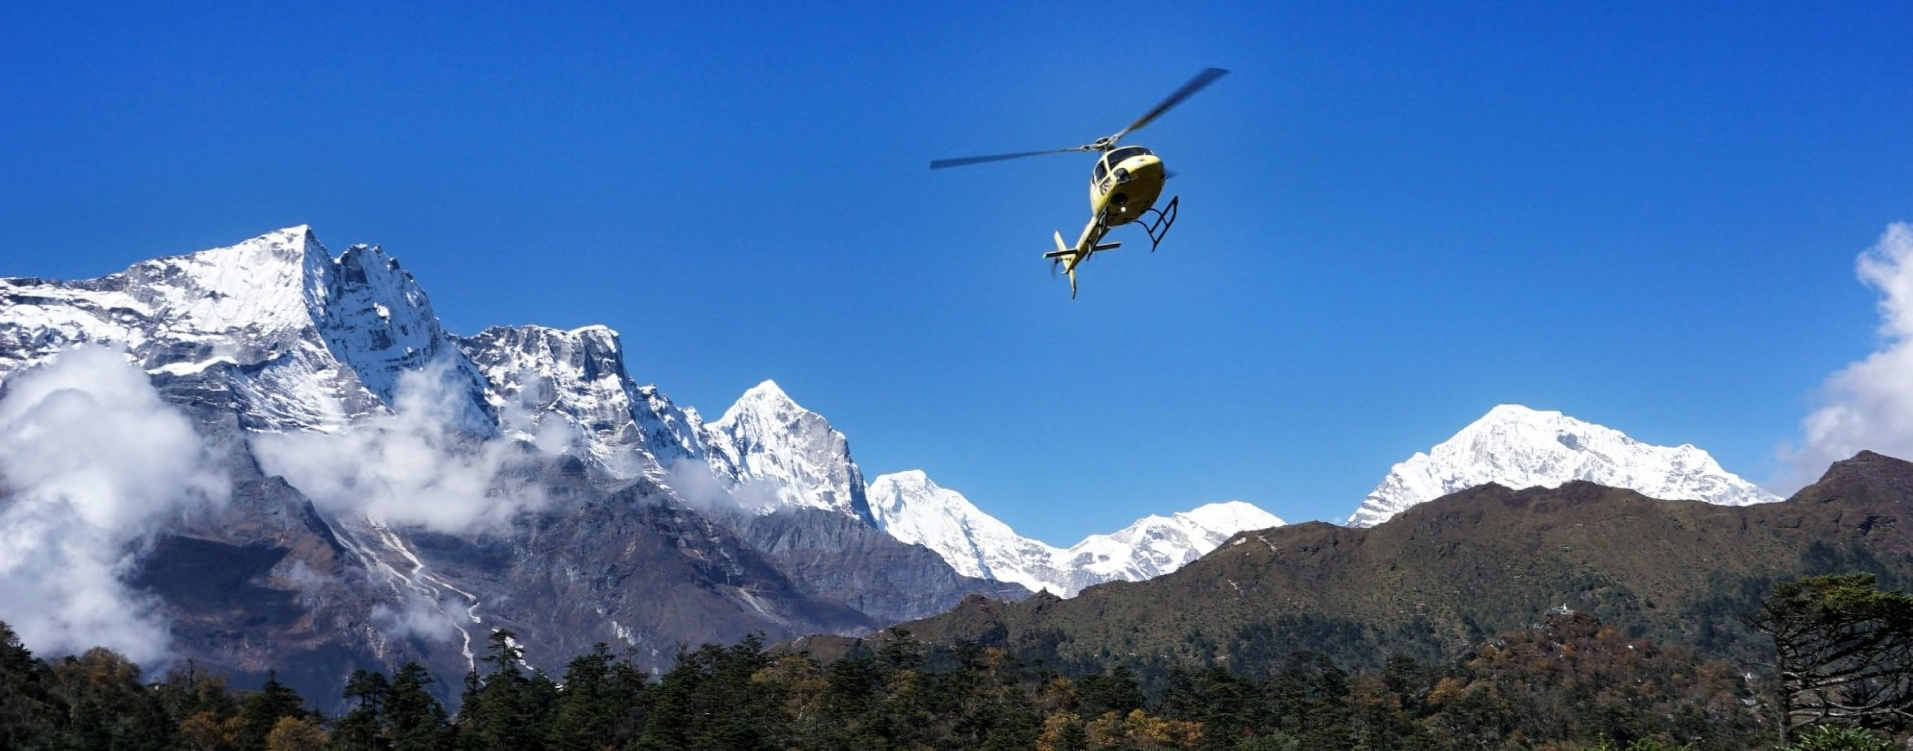 Deluxe Everest Heli Adventure - Helicopter landing in Namche Bazaar